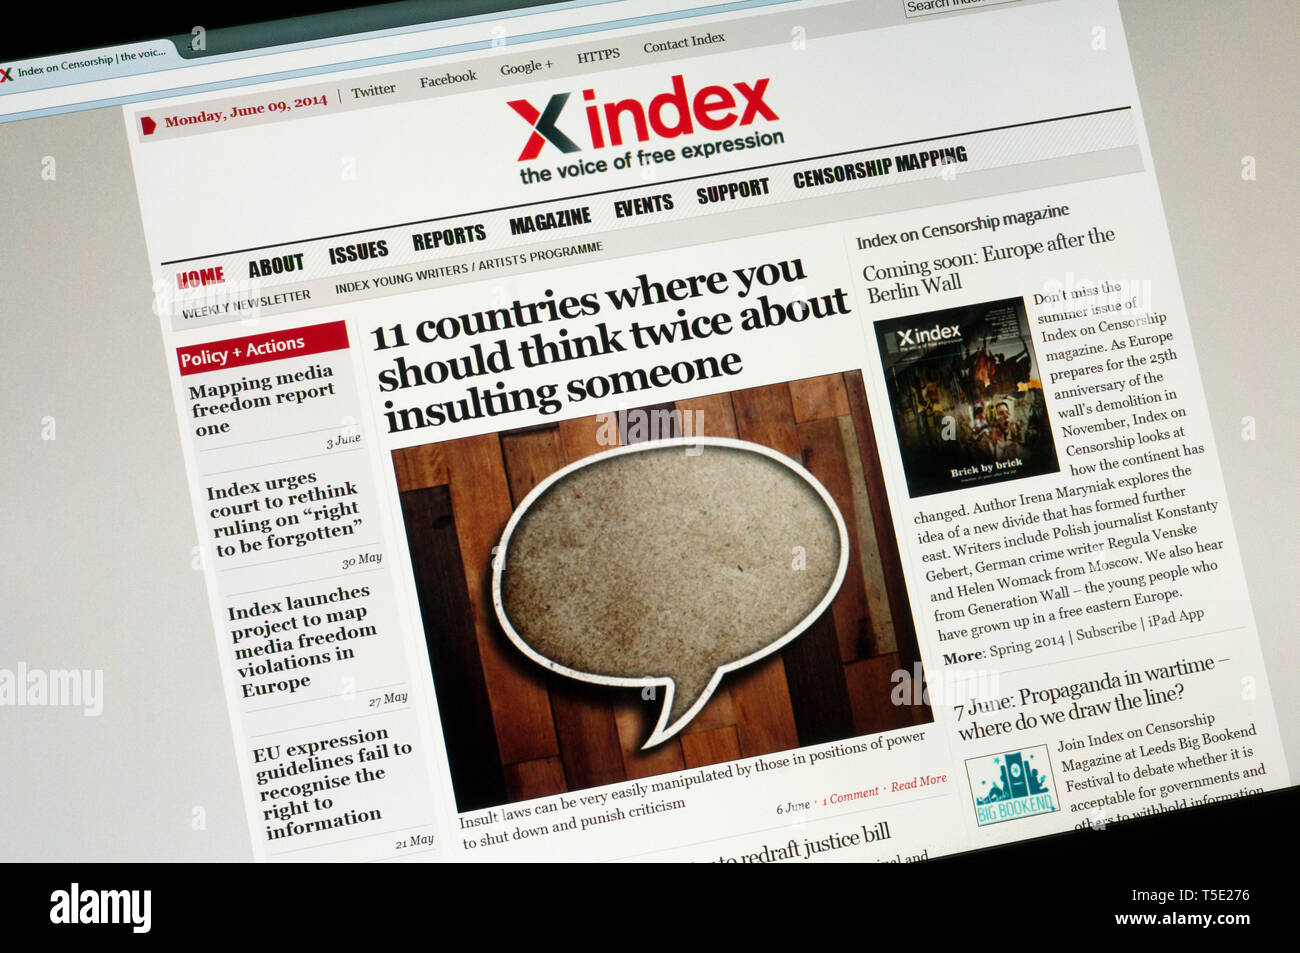 Xindex, il sito web della campagna elettorale organizzazione editoriale indice sulla censura. Foto Stock